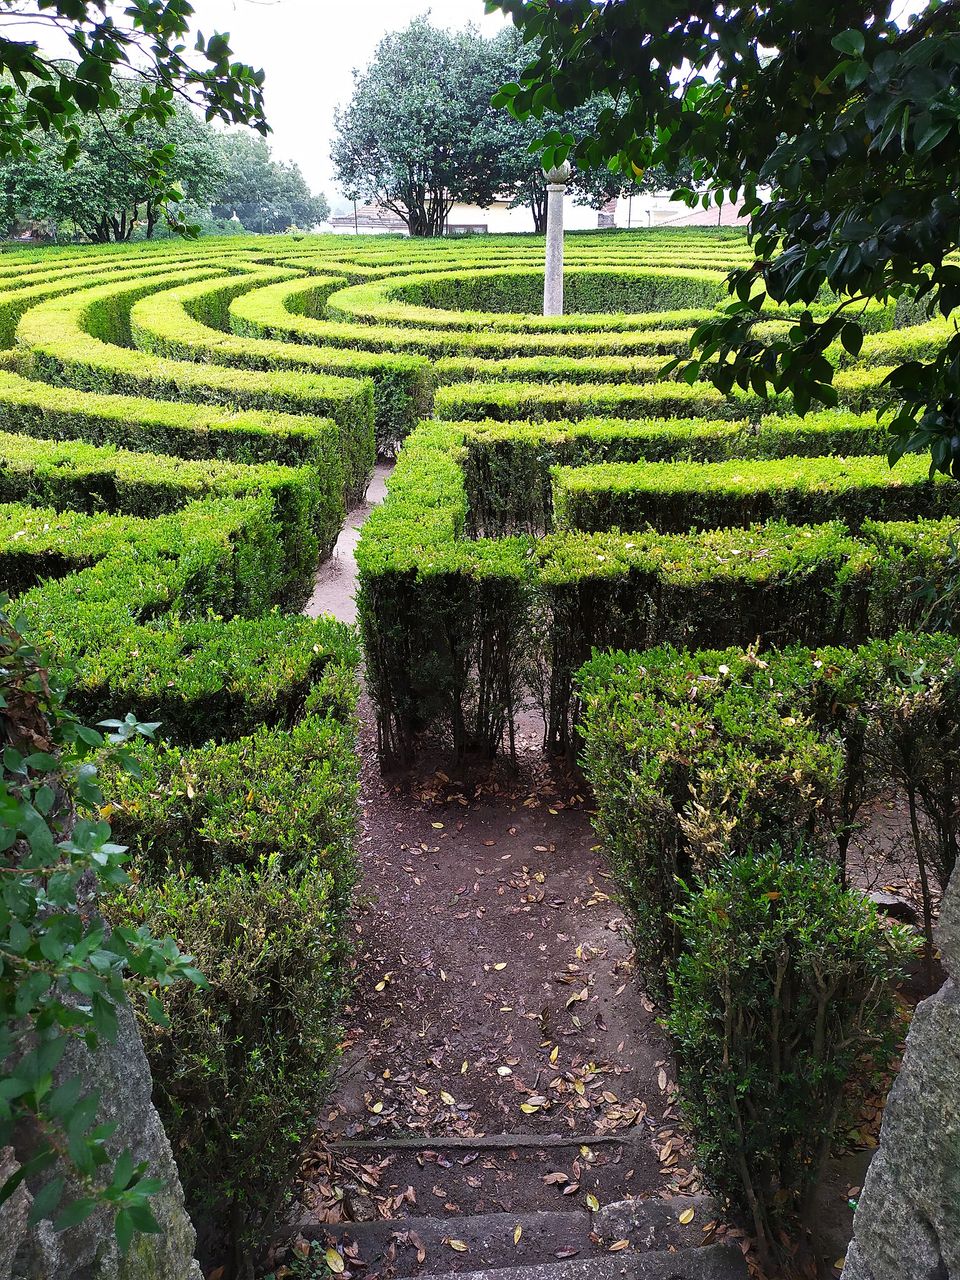 Hedge maze in Parque São Roque da Lameira